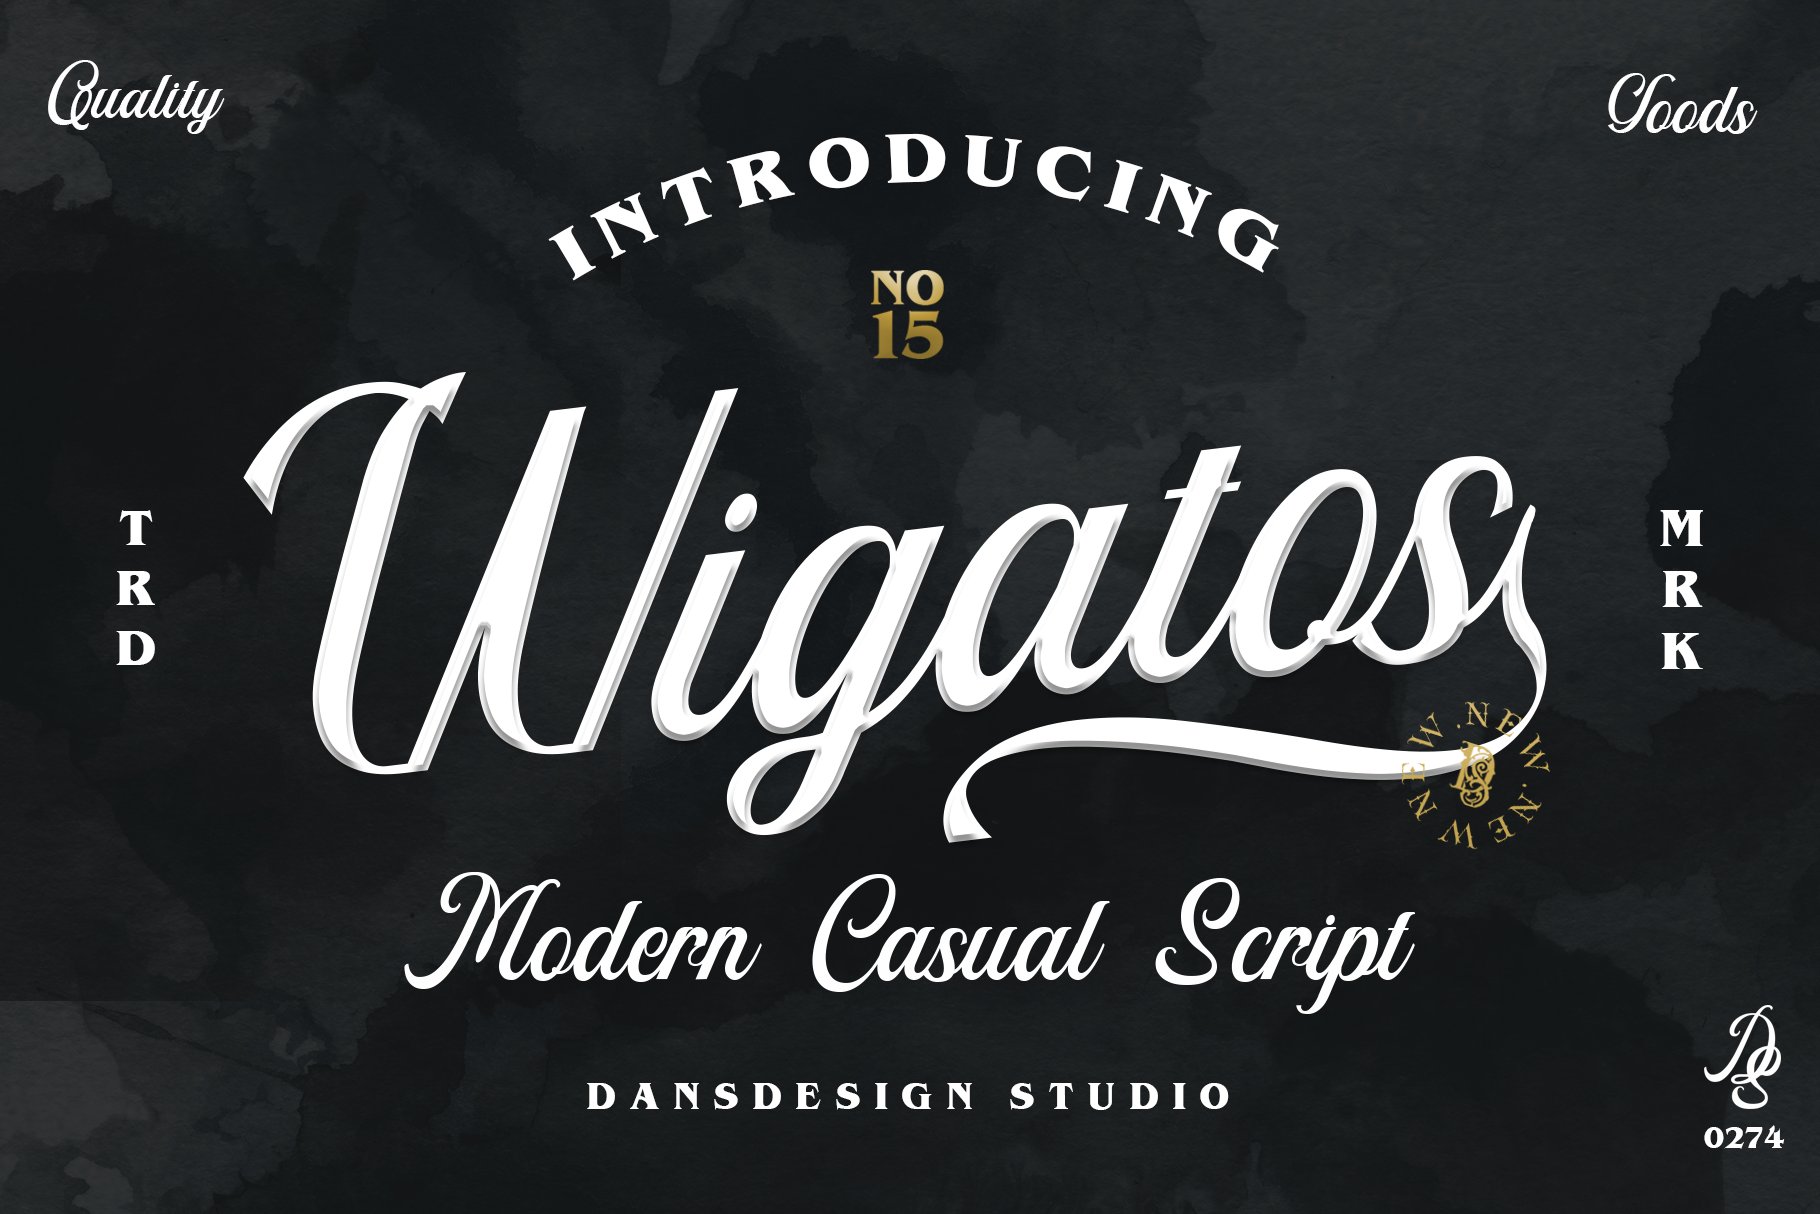 Wigatos cover image.